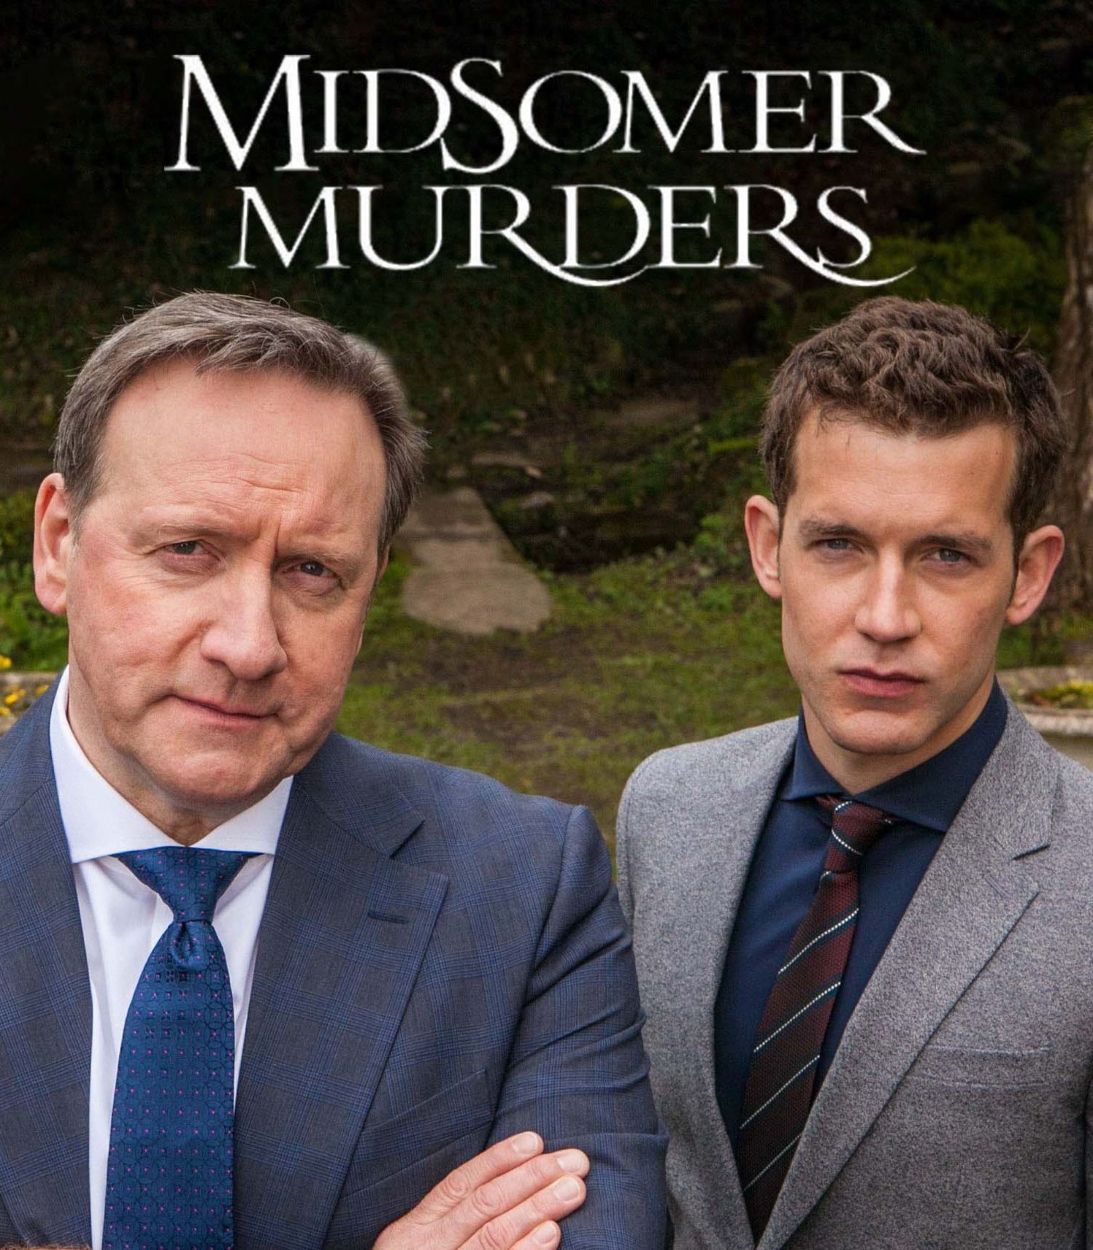 midsomer murders poster TLDR vertical